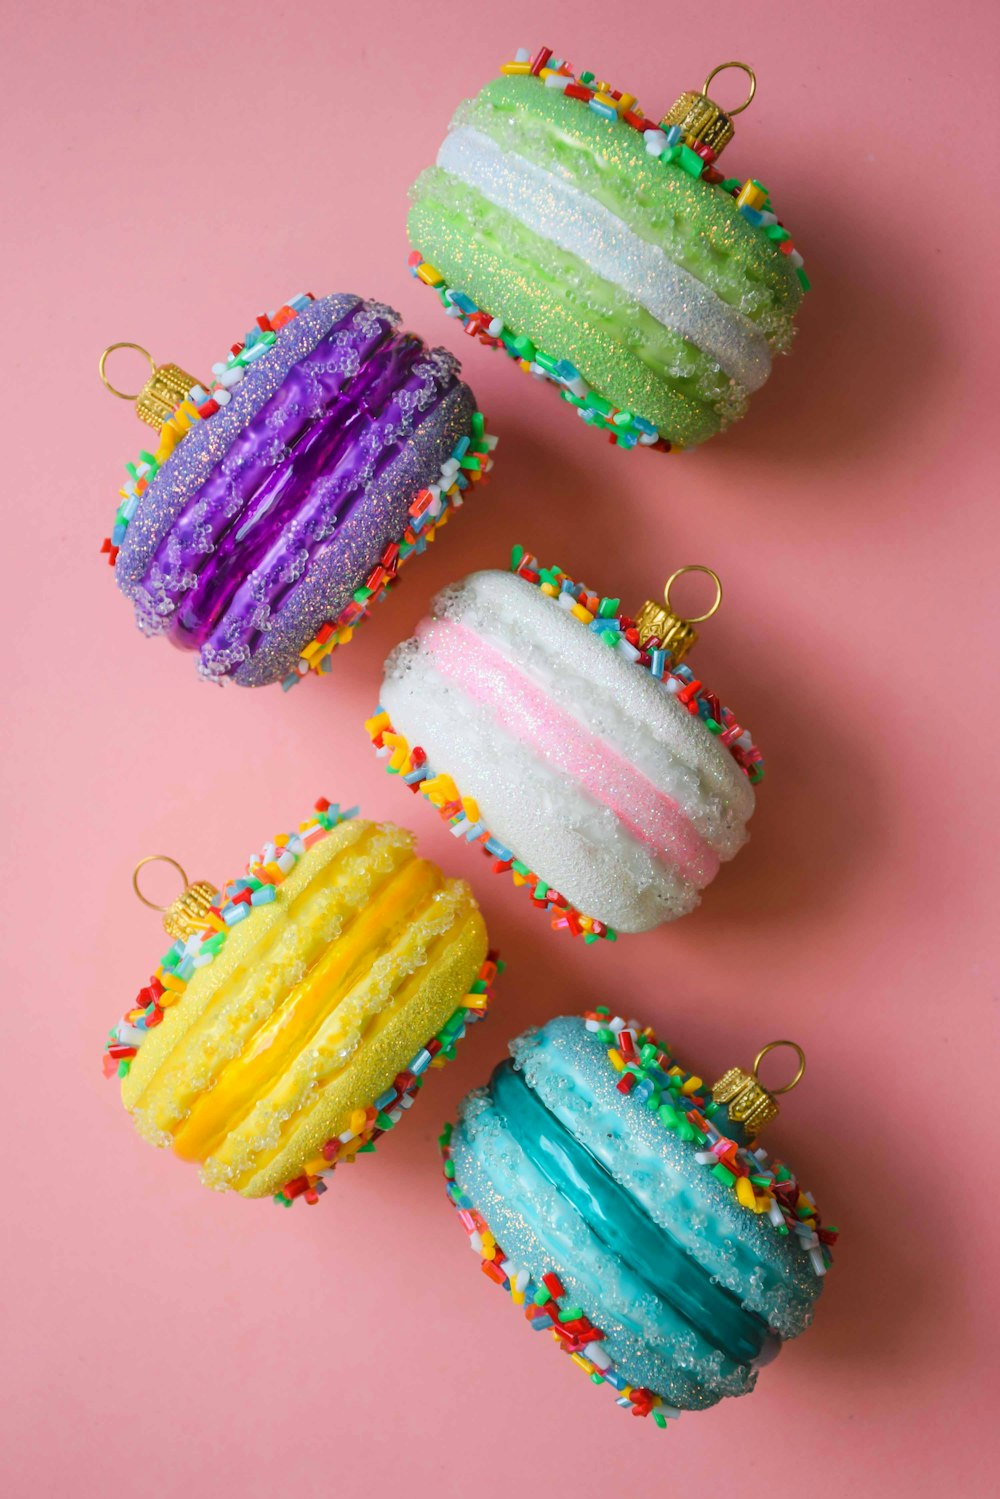 Cuatro cupcakes coloridos con chispas sobre ellos